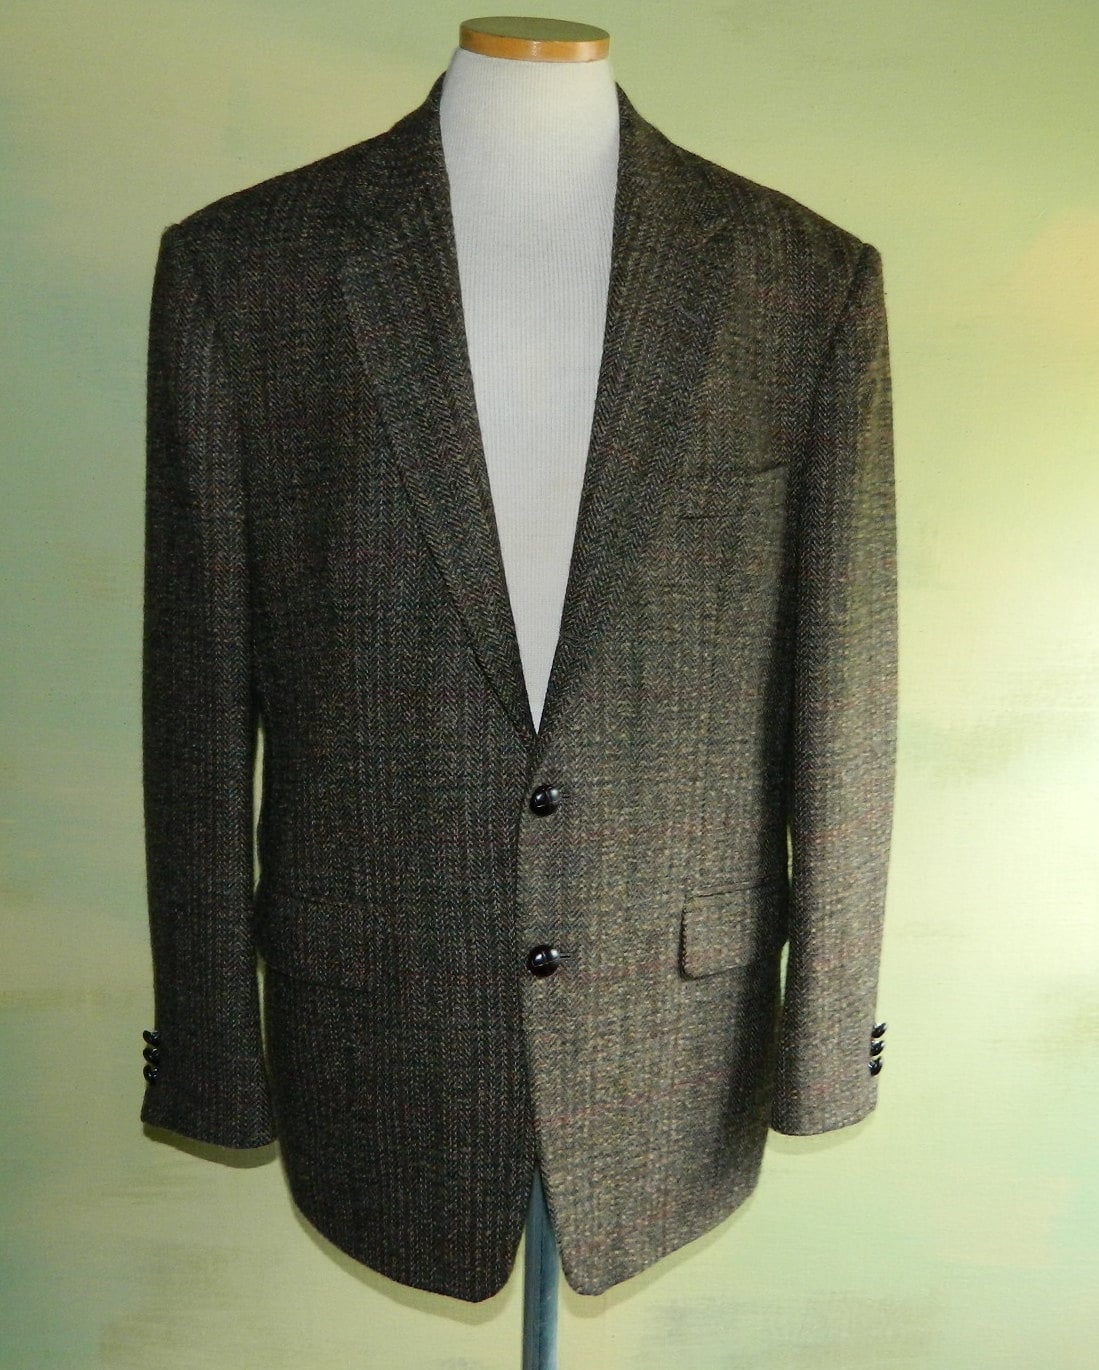 42 Vintage 60s Donegal Tweed Kilkenny Jacket Made in Ireland